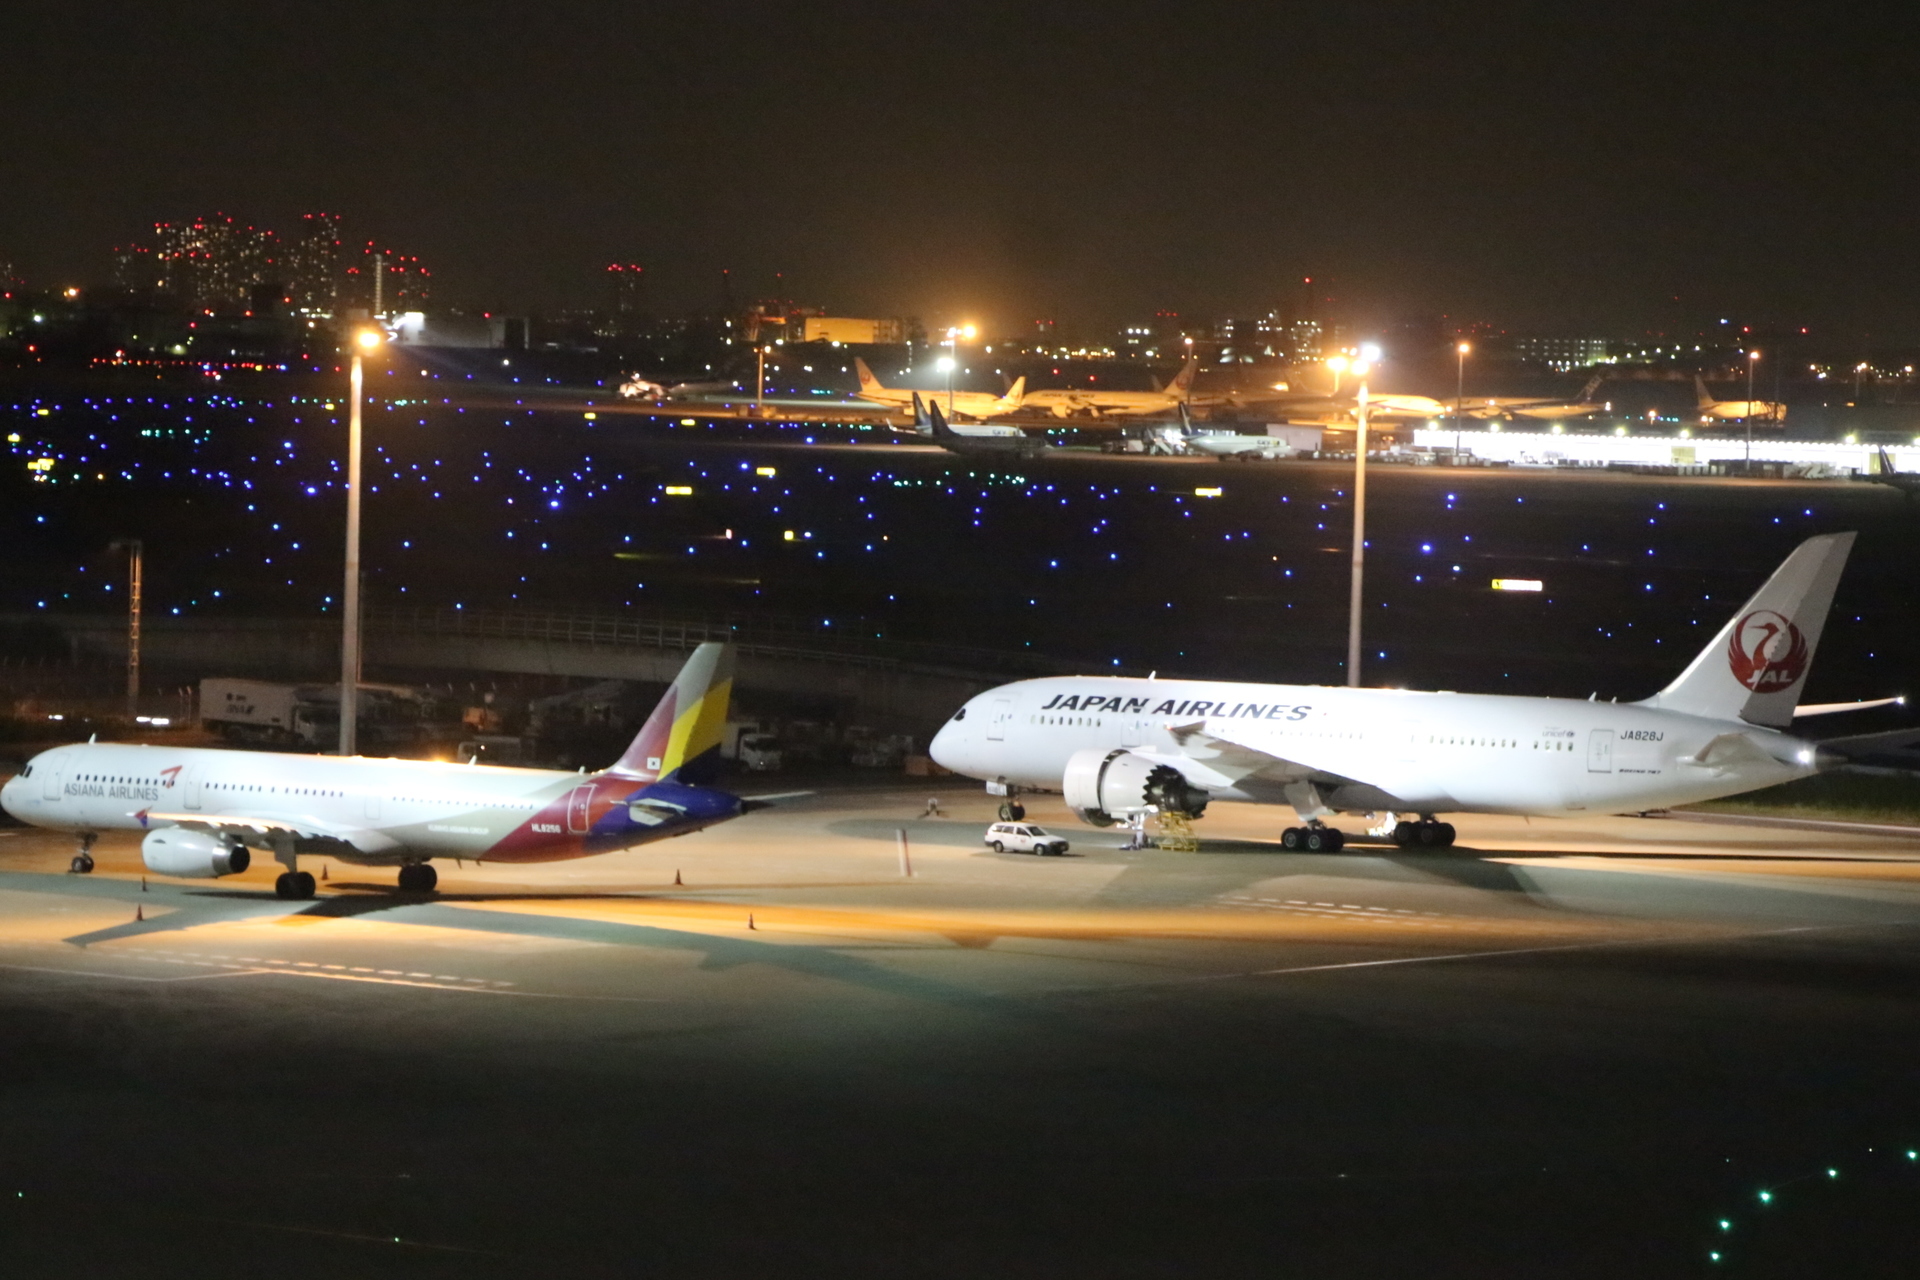 羽田空港国際線ターミナルからの飛行機夜景 気まぐれドライブ日記 自然の生命の風景と夜景